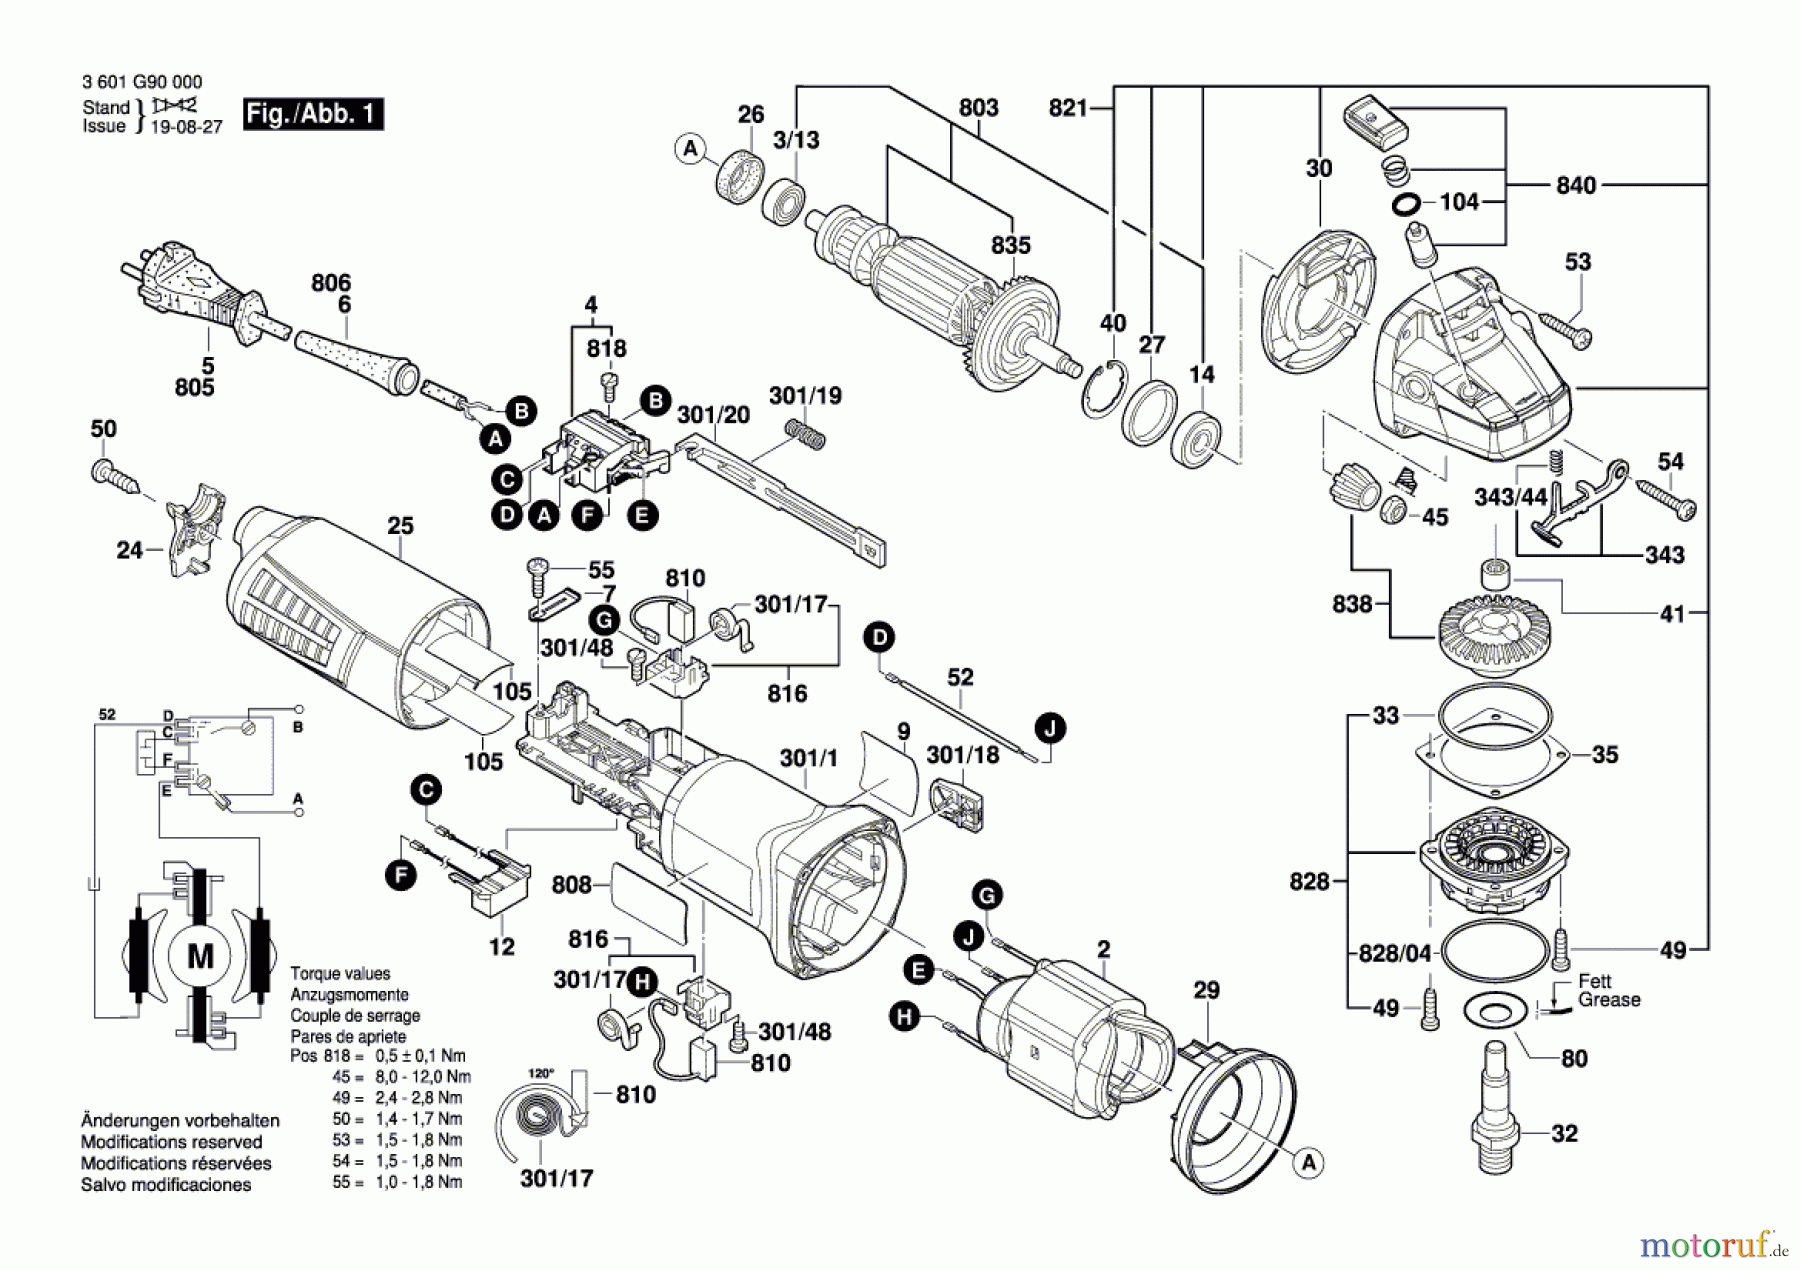  Bosch Werkzeug Winkelschleifer GWS 9-115 Seite 1